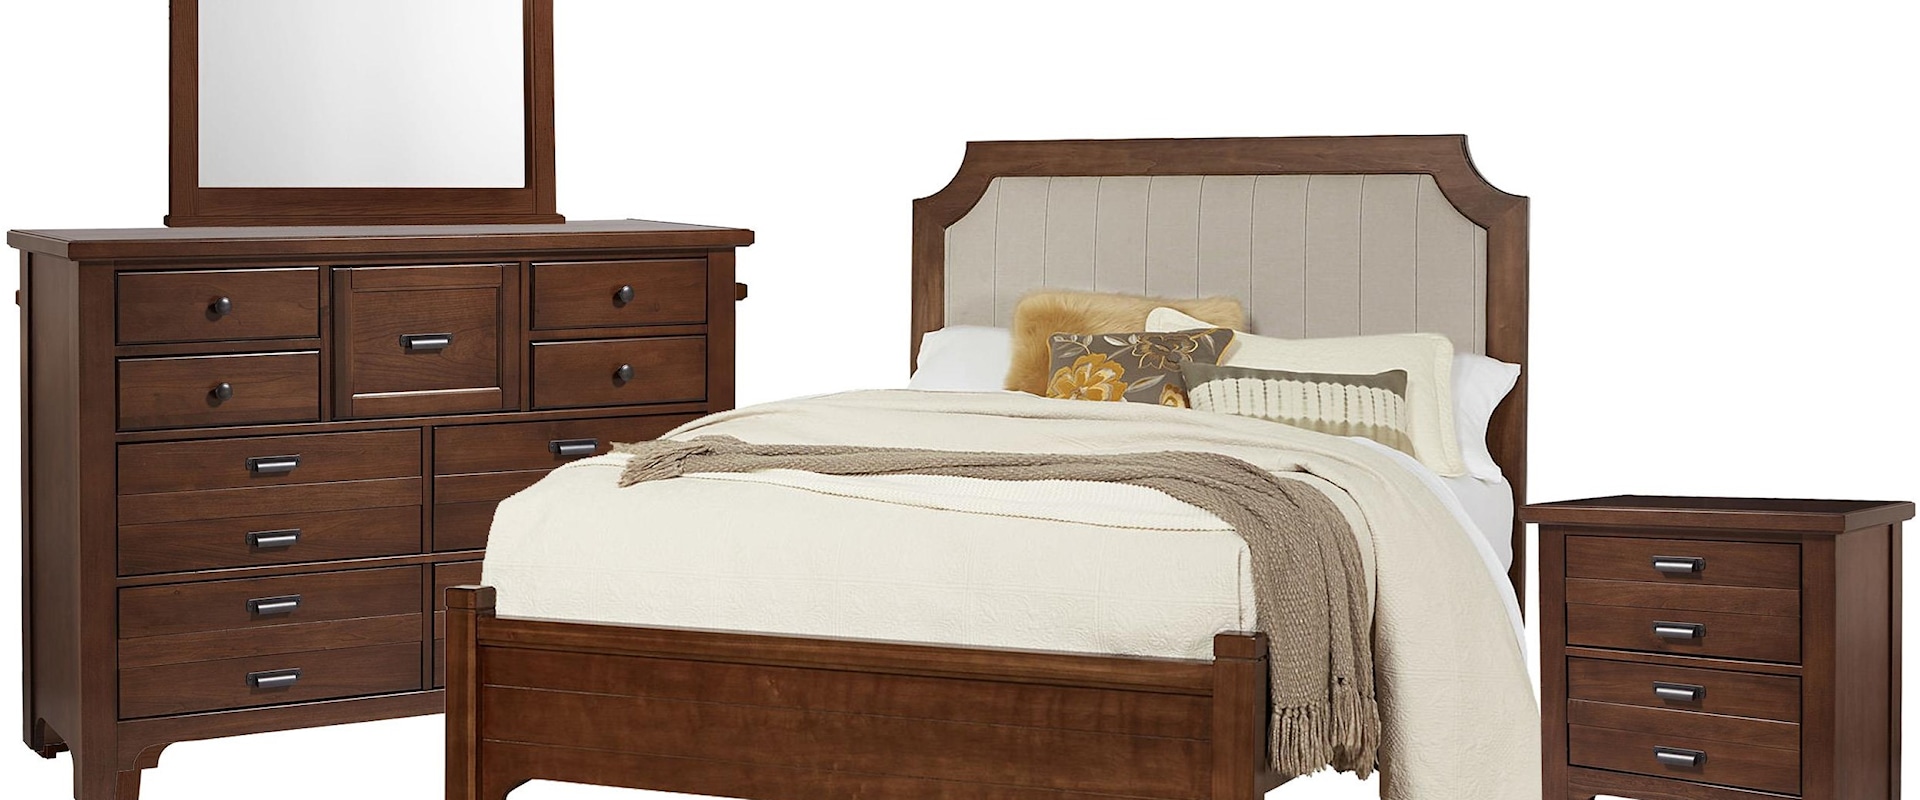 King Upholstered Bed, 9 Drawer Dresser, Master Landscape Mirror, 2 Drawer Nightstand